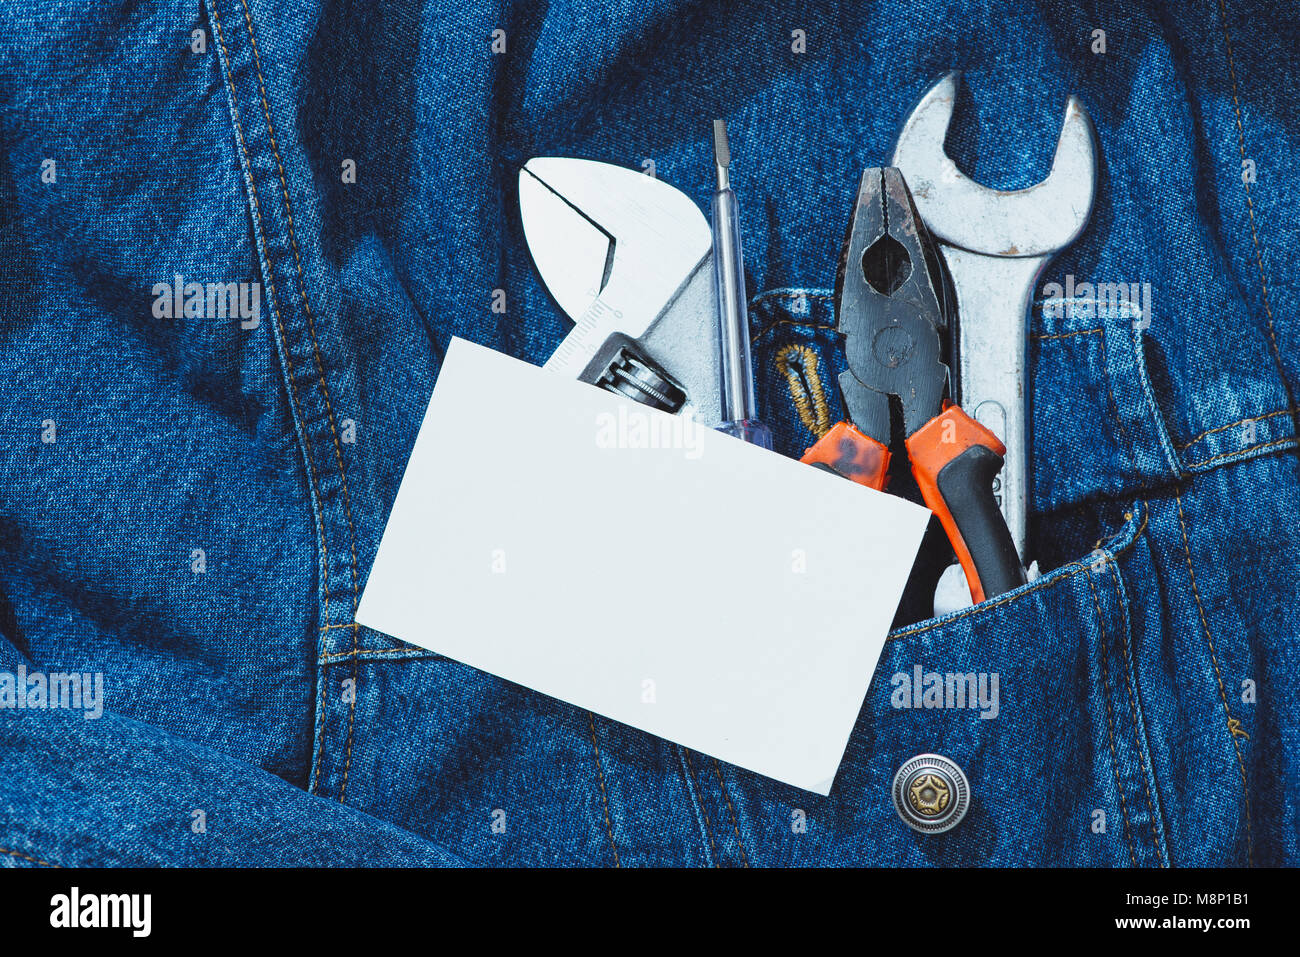 Jeans, réparer l'équipement et de nombreux outils pratiques. Top View with copy space Banque D'Images